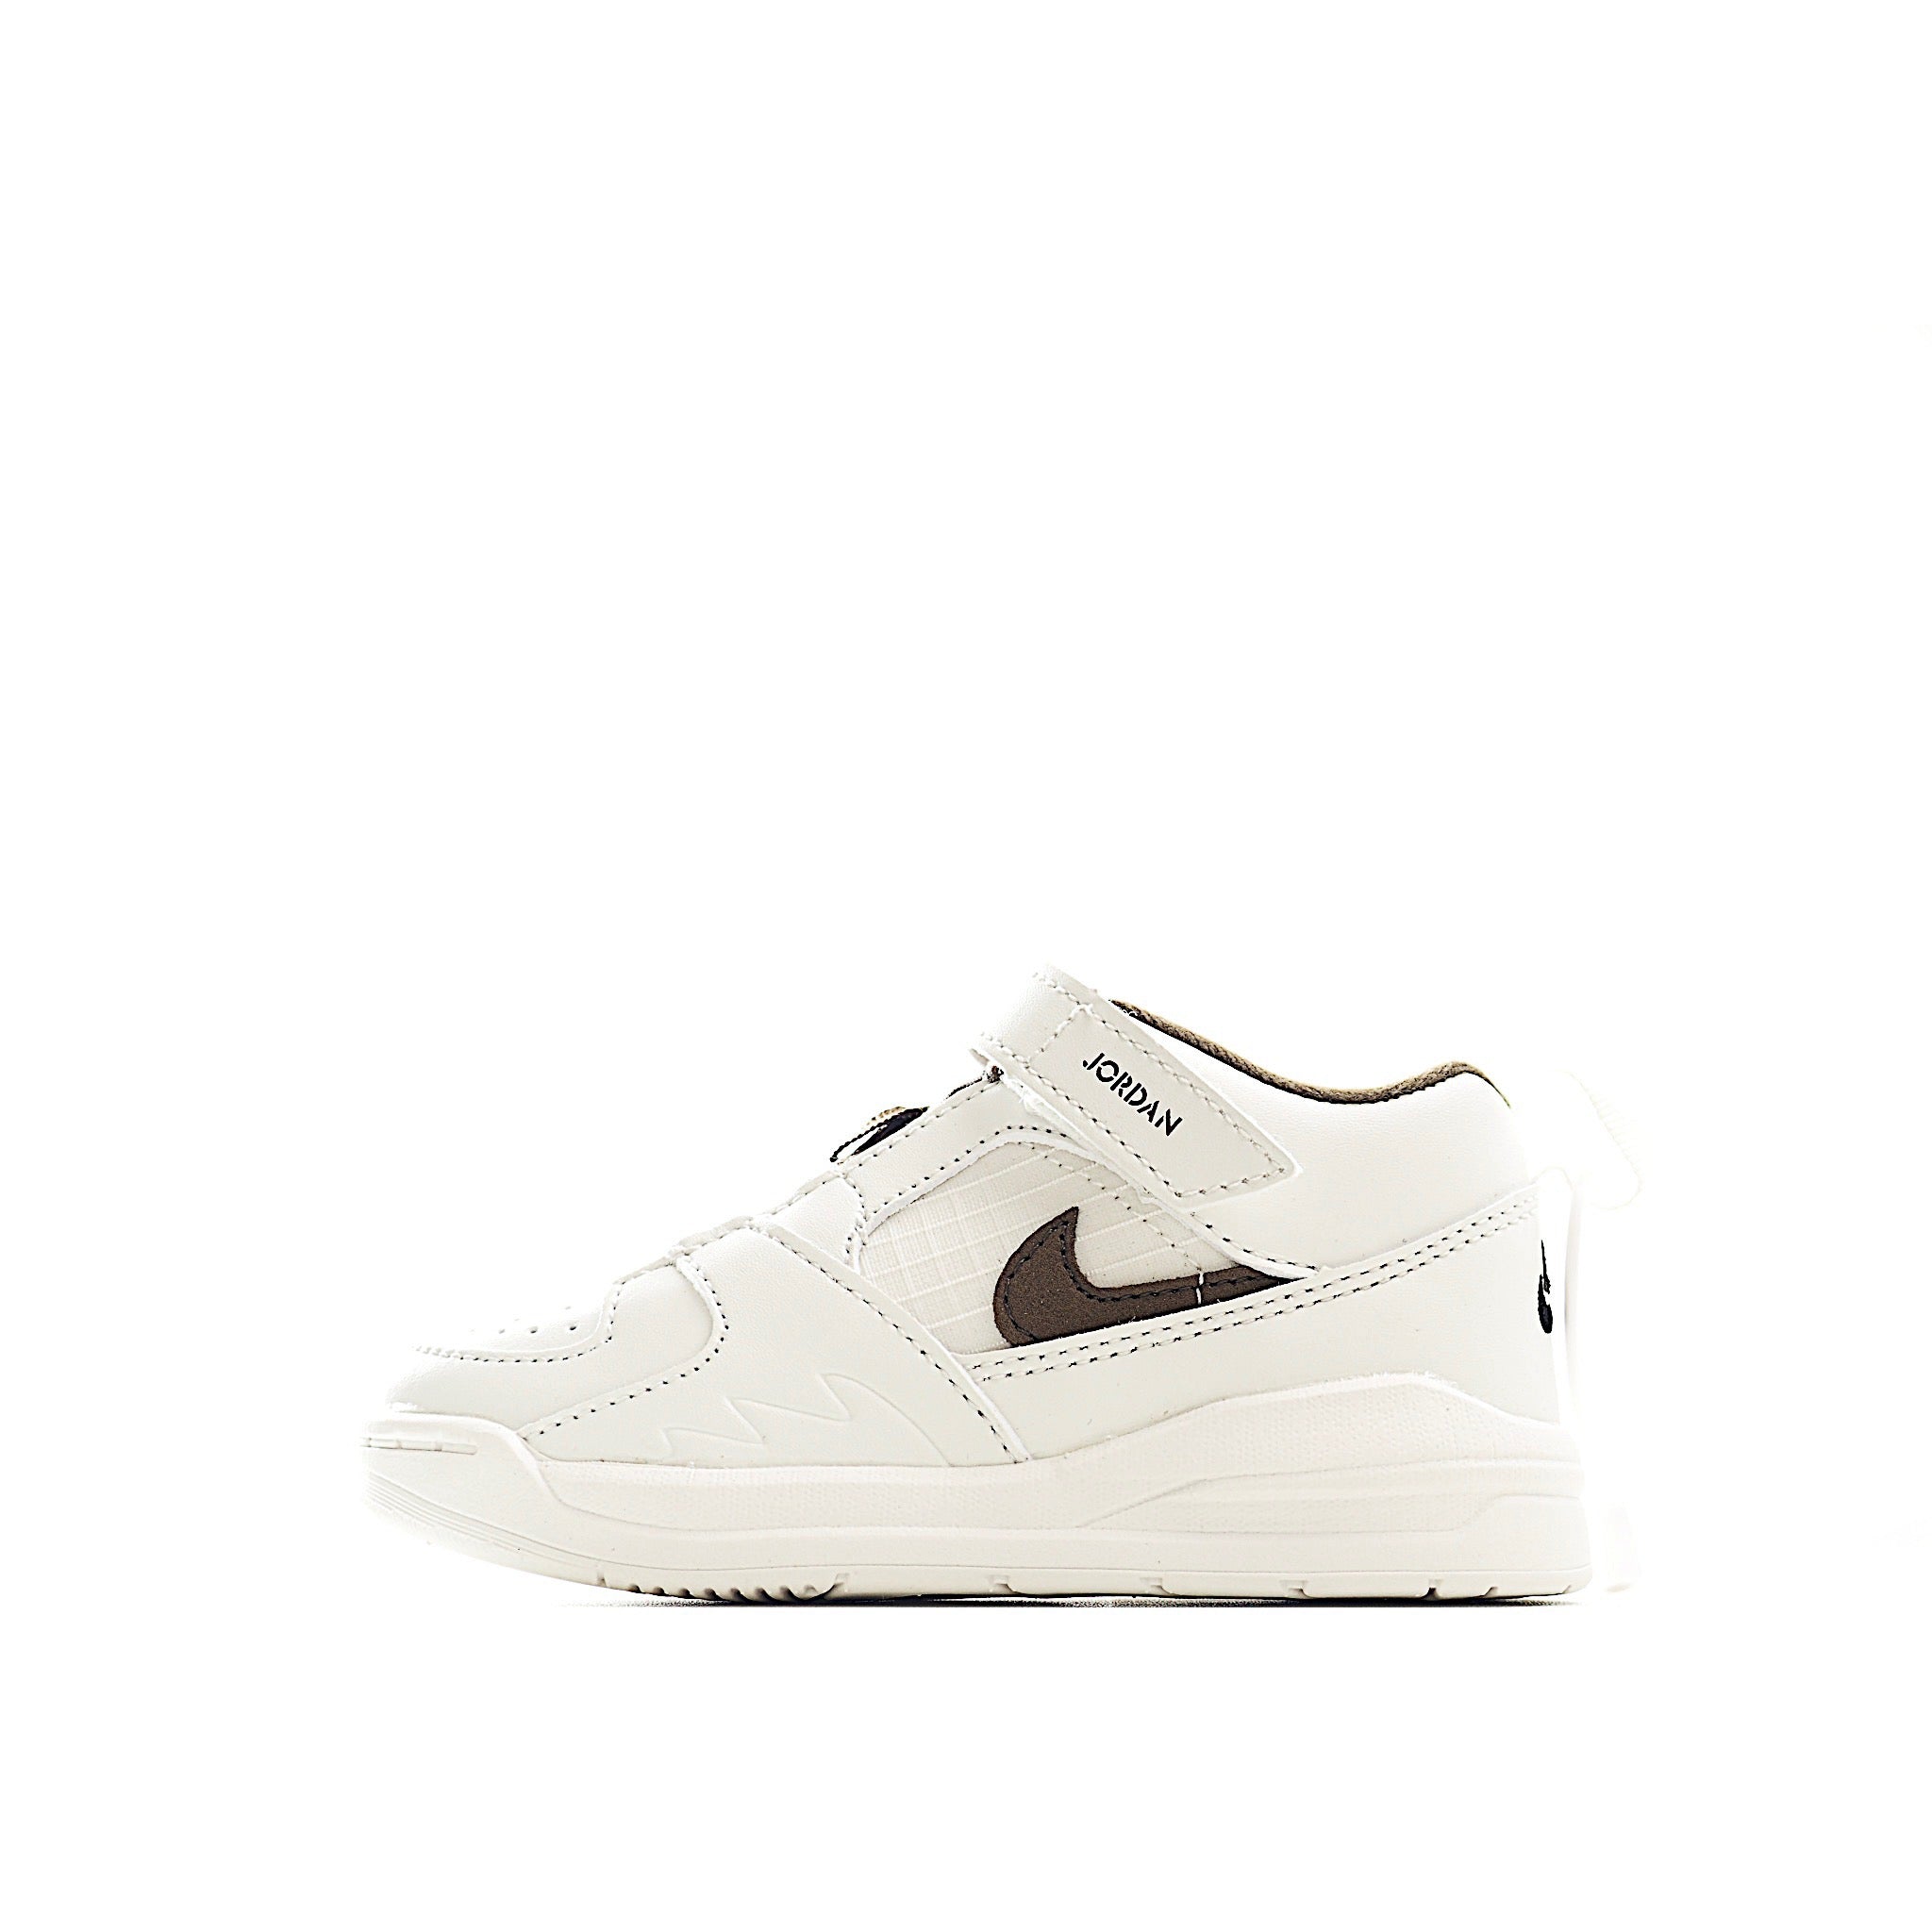 Nike jordan 90 brown shoes